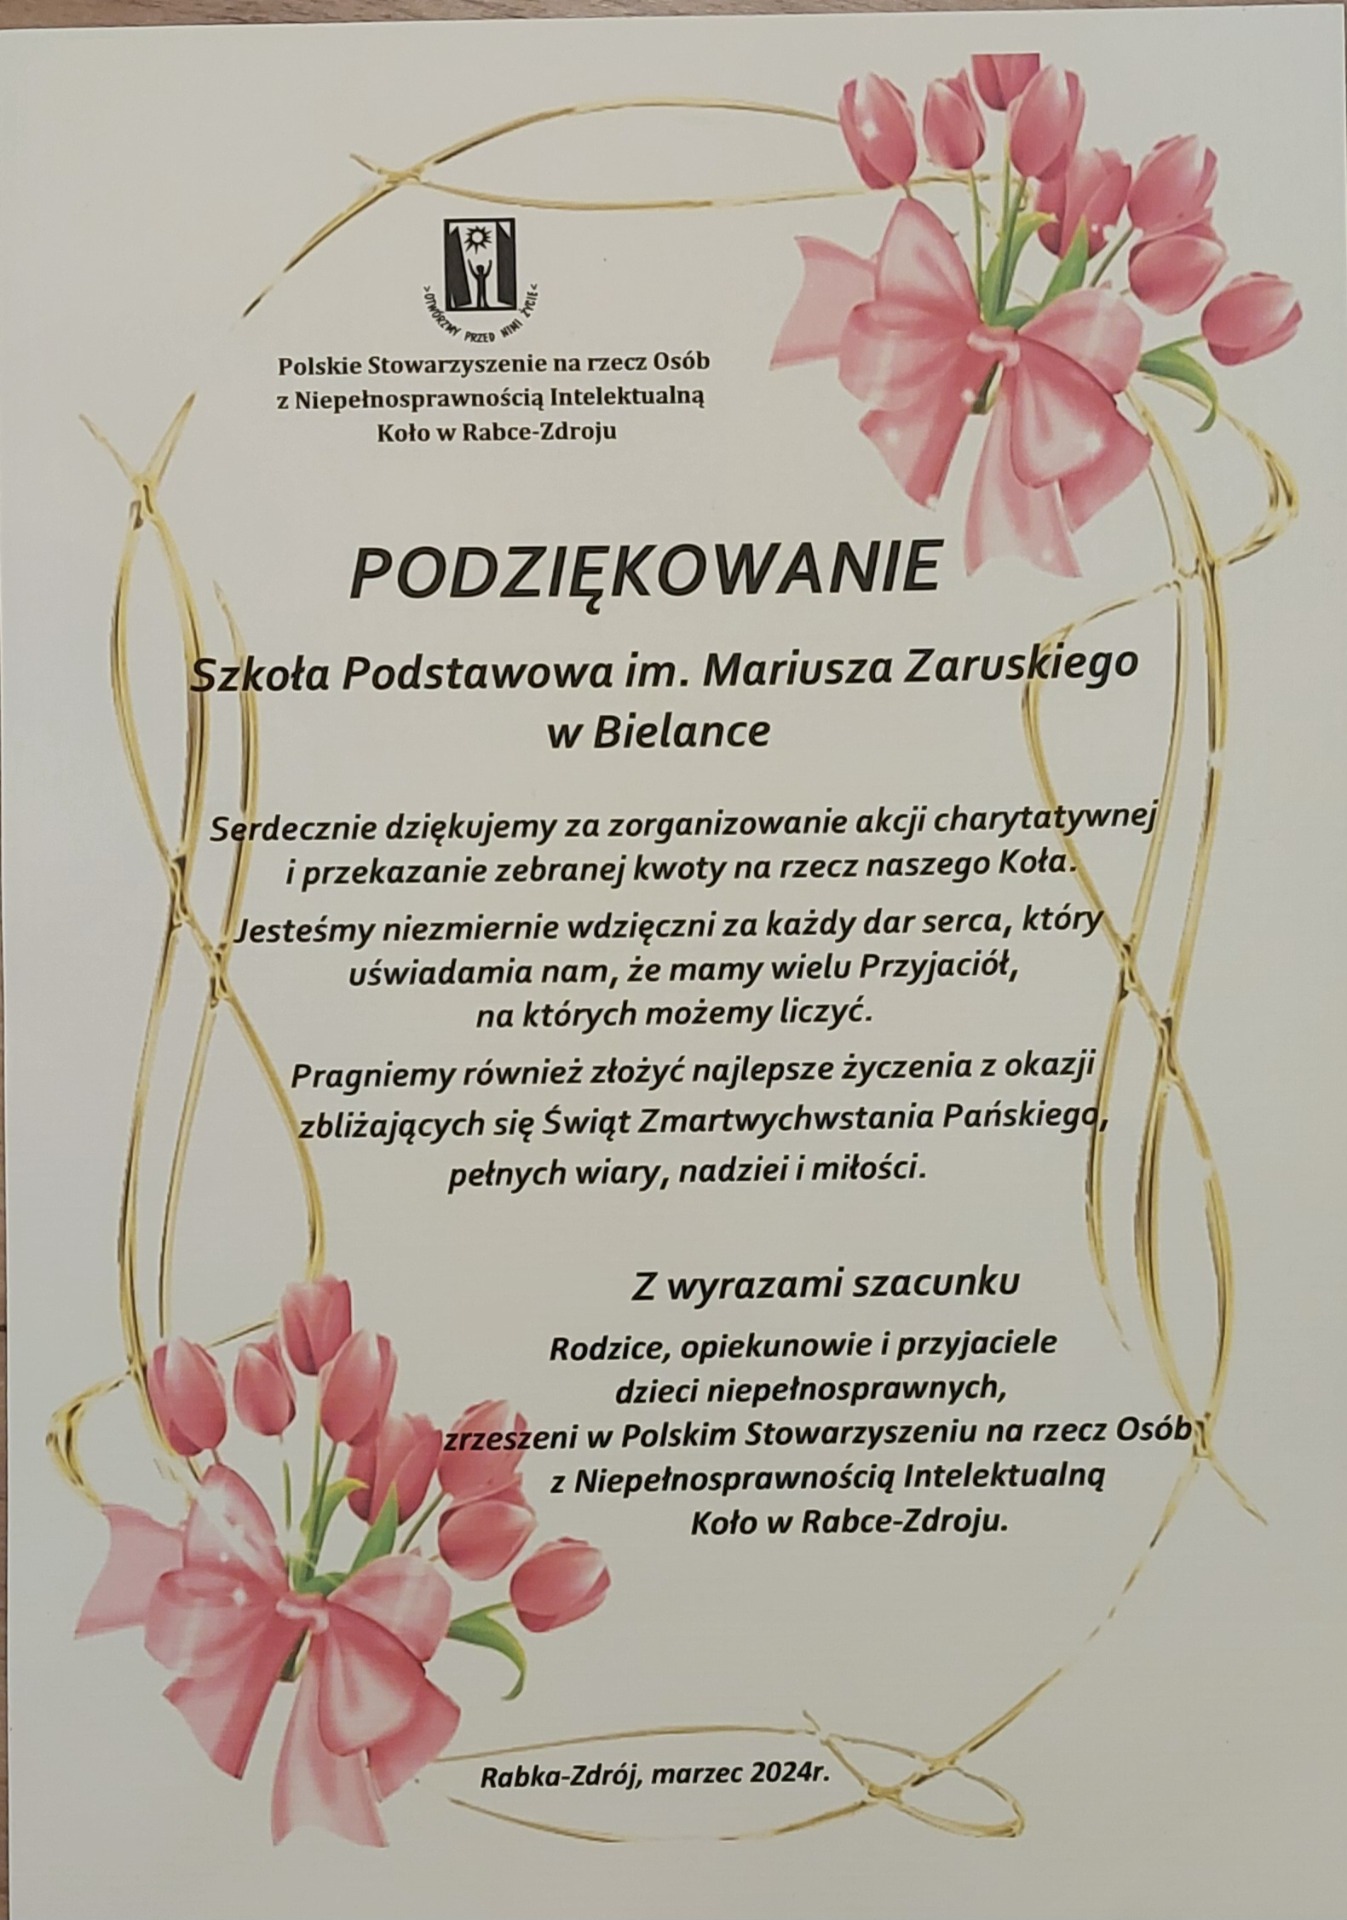 Polskie Stowarzyszenie na rzecz Osób z Niepełnosprawnością Intelektulaną - Obrazek 1